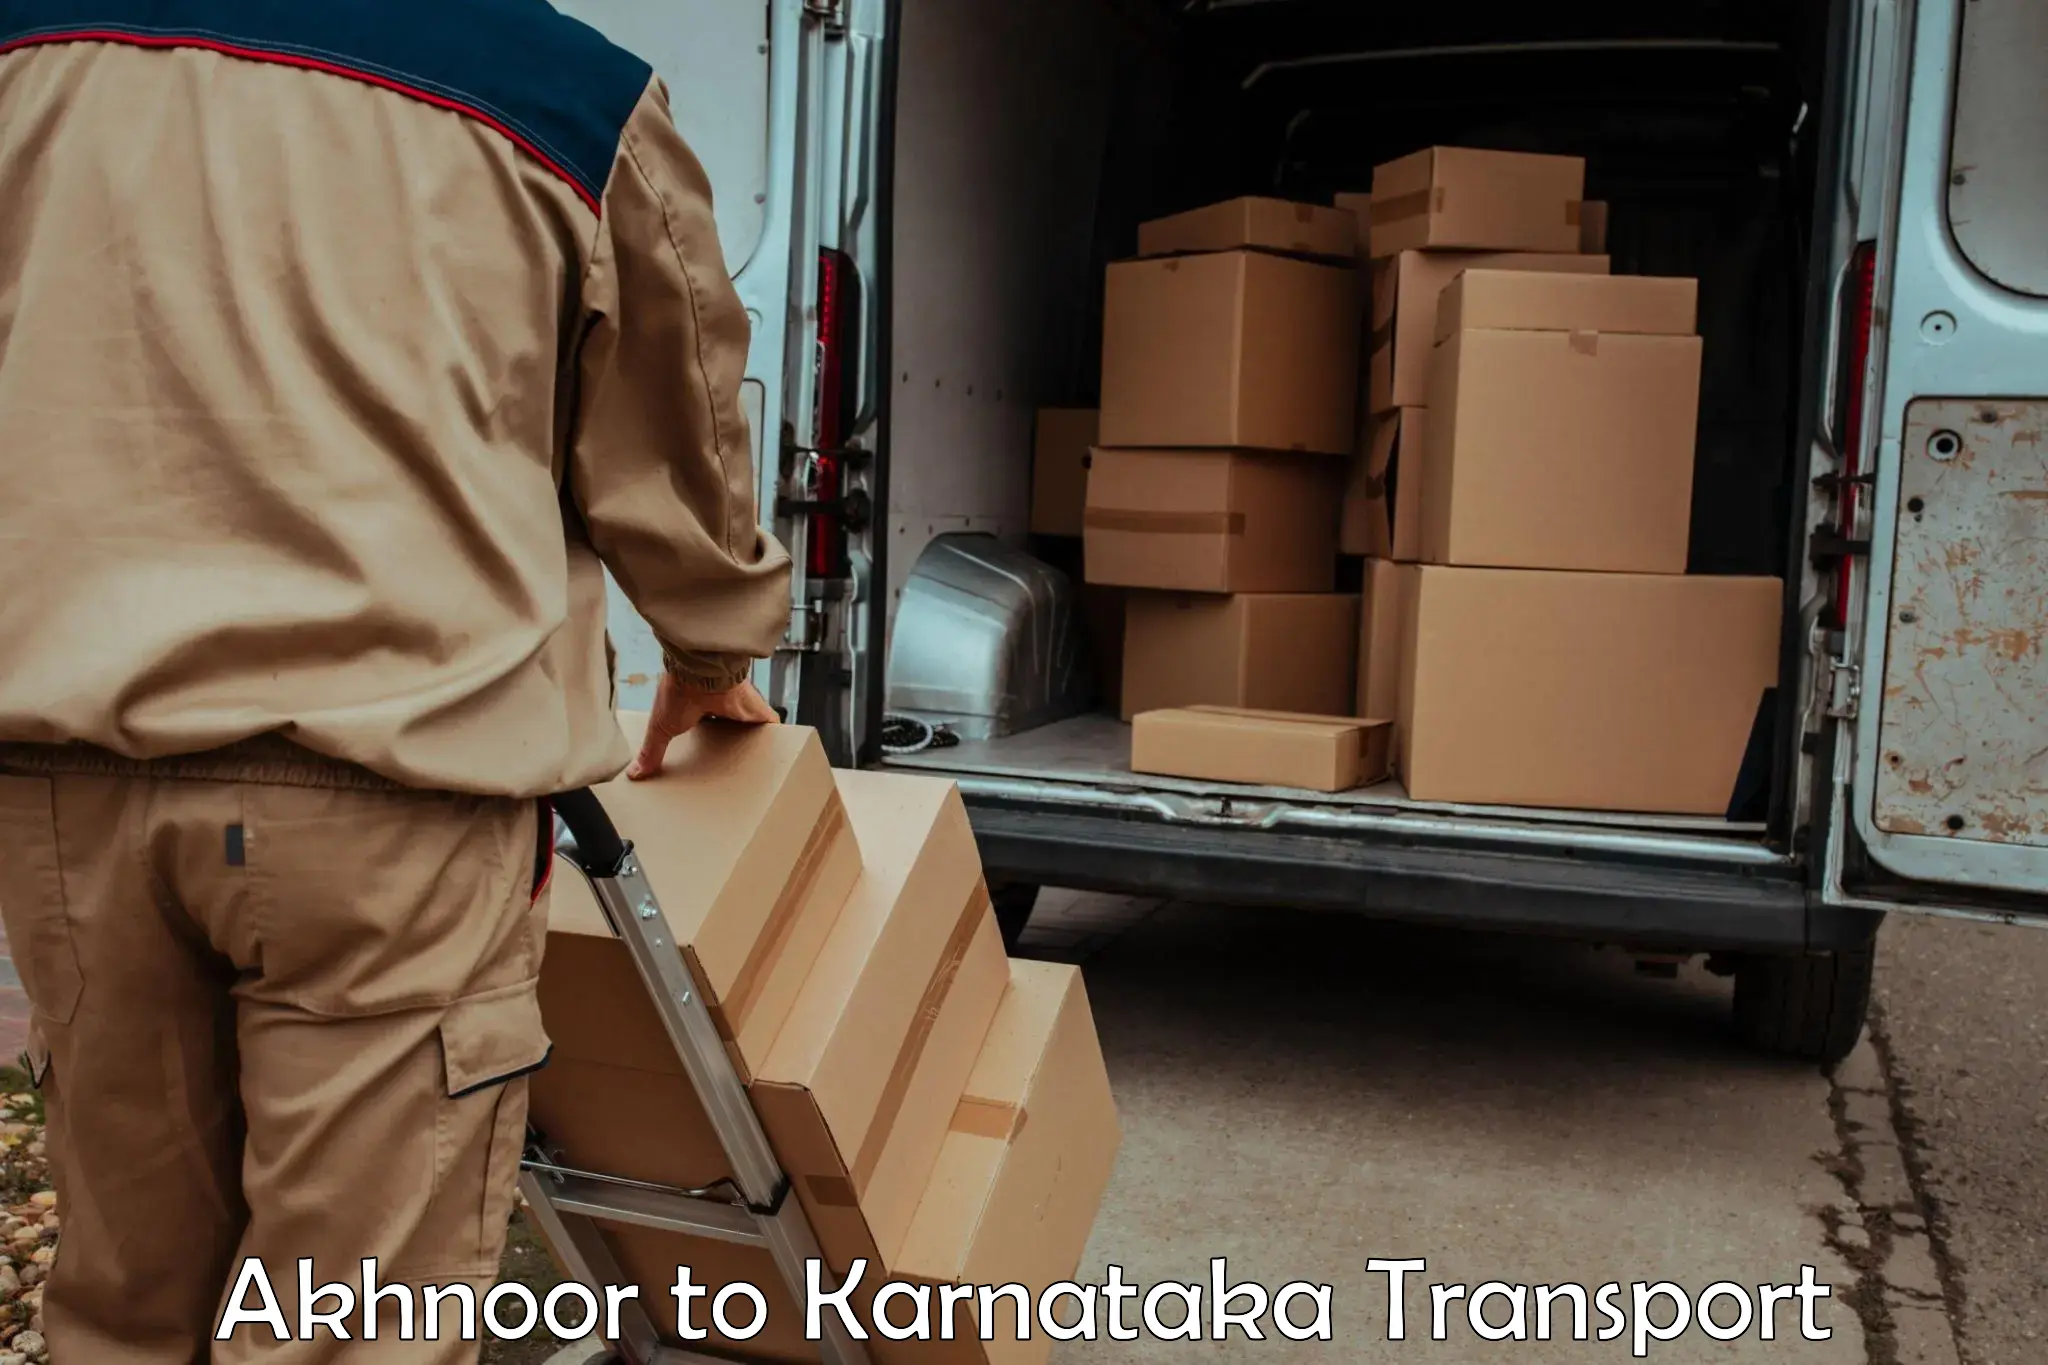 Lorry transport service in Akhnoor to IIIT Raichur